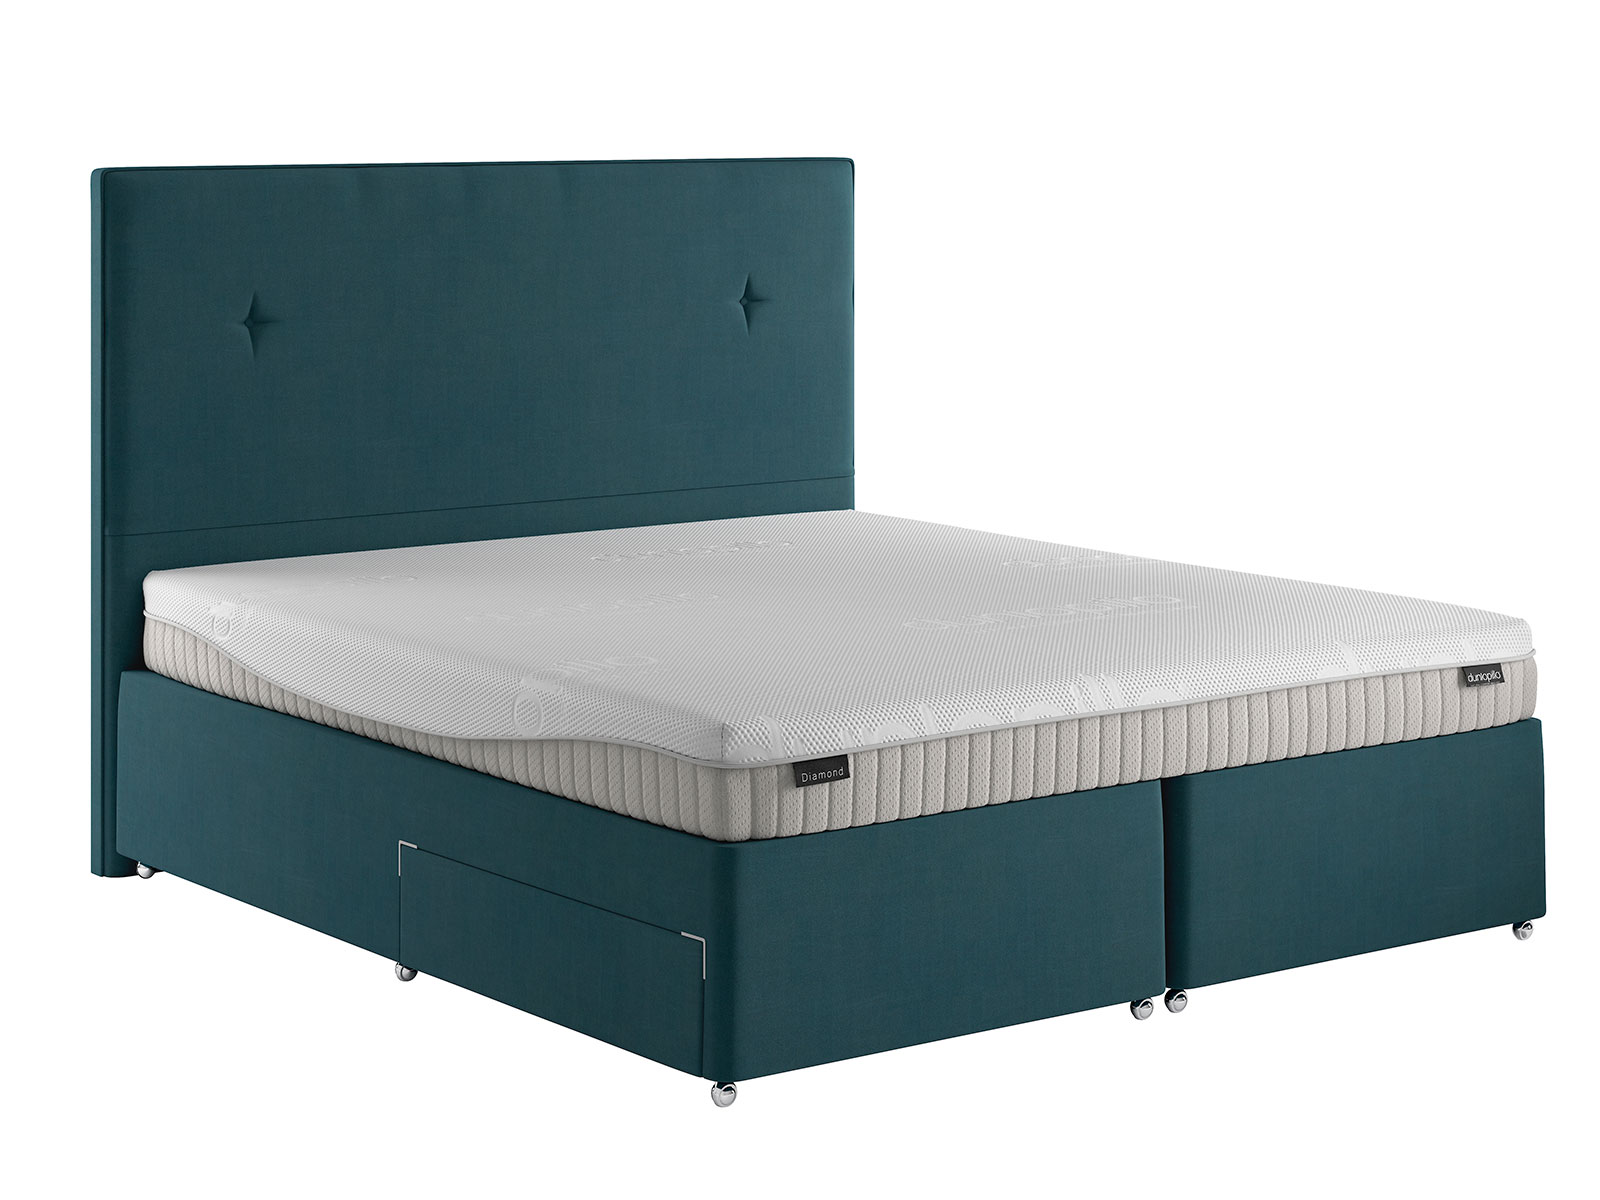 dunlopillo single mattress price